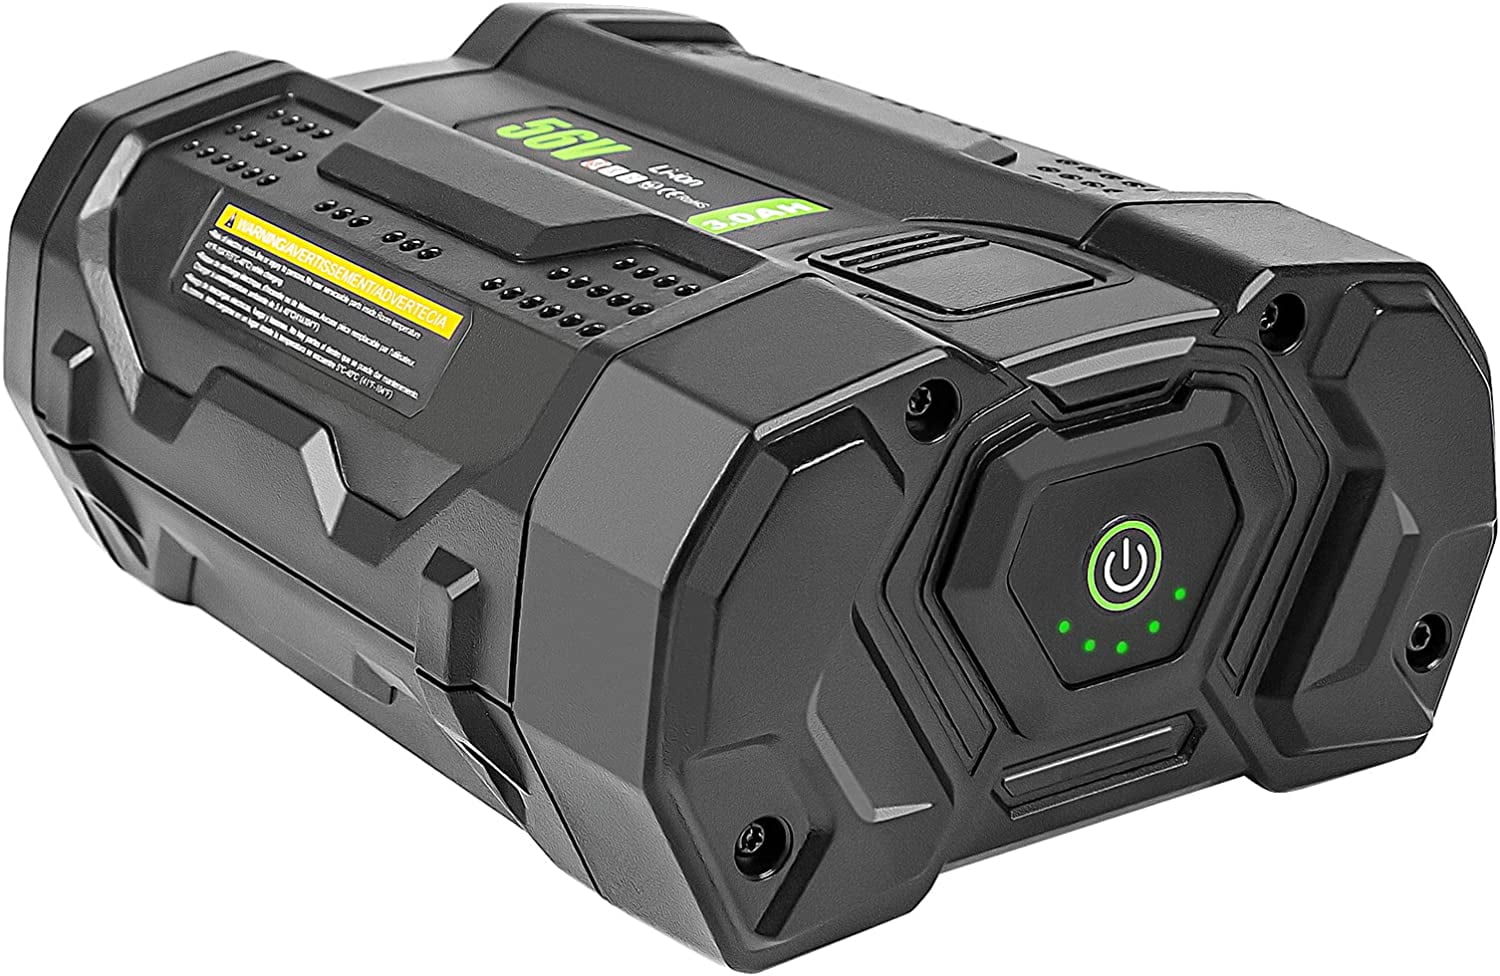 TOPBATT 2 Packs 3000mAh LBX2540 40 Volt Max Battery Replacement for Black  and Decker 40V Lithium Battery LBX1540 LBX2040 LBX2540